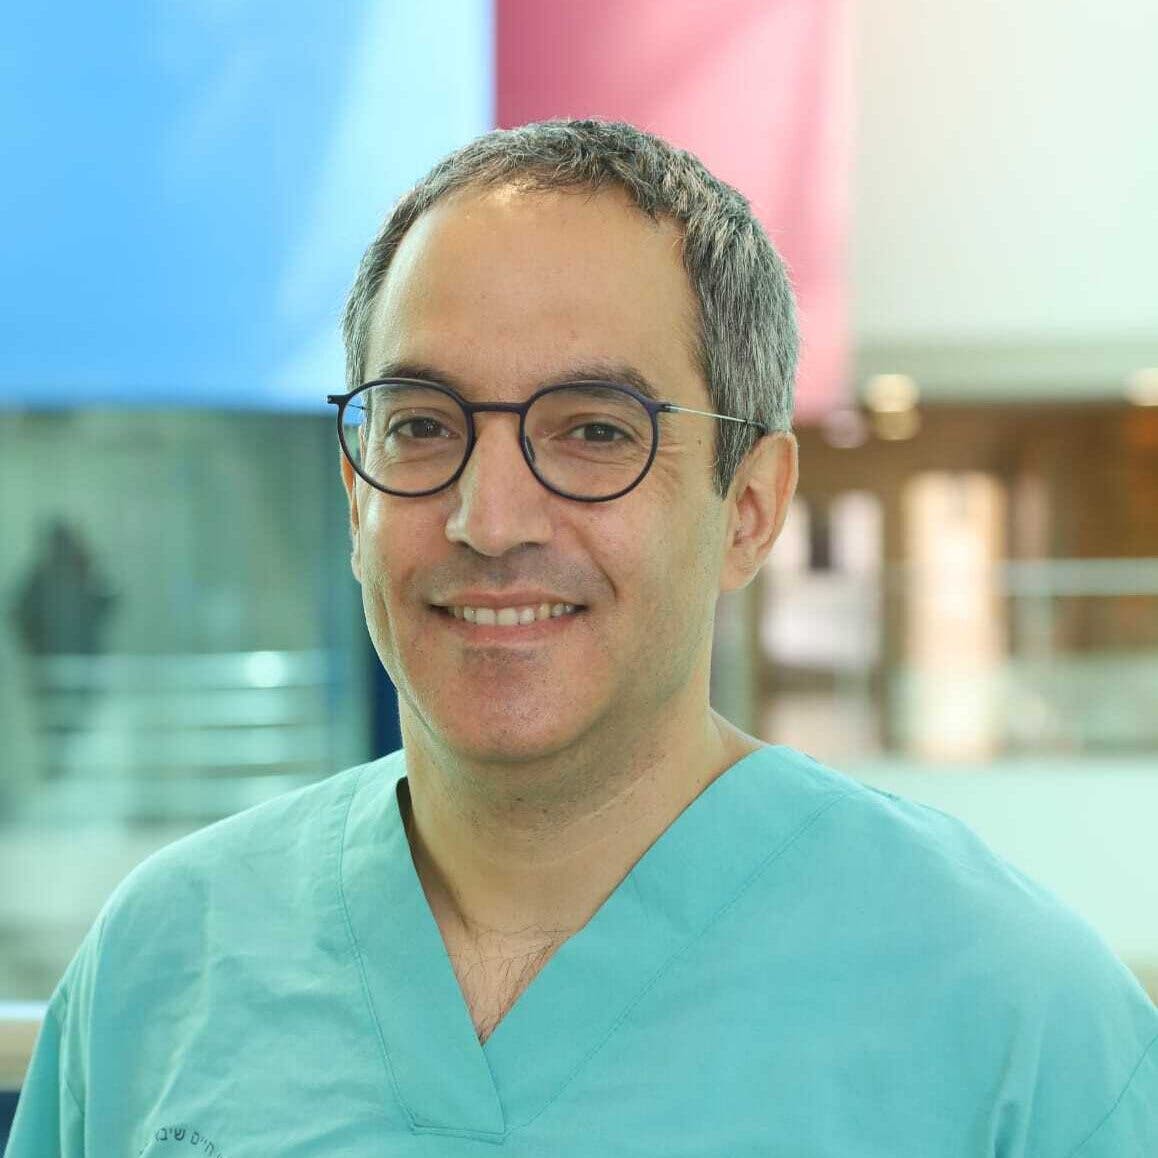 Elad Maor, bác sĩ tim mạch tại Trung tâm Y tế Sheba ở Tel Aviv, trở về Israel hôm 23/11 sau cuộc hội thảo 3 ngày ở ExCeL London. Ảnh: Sheba Medical Center.